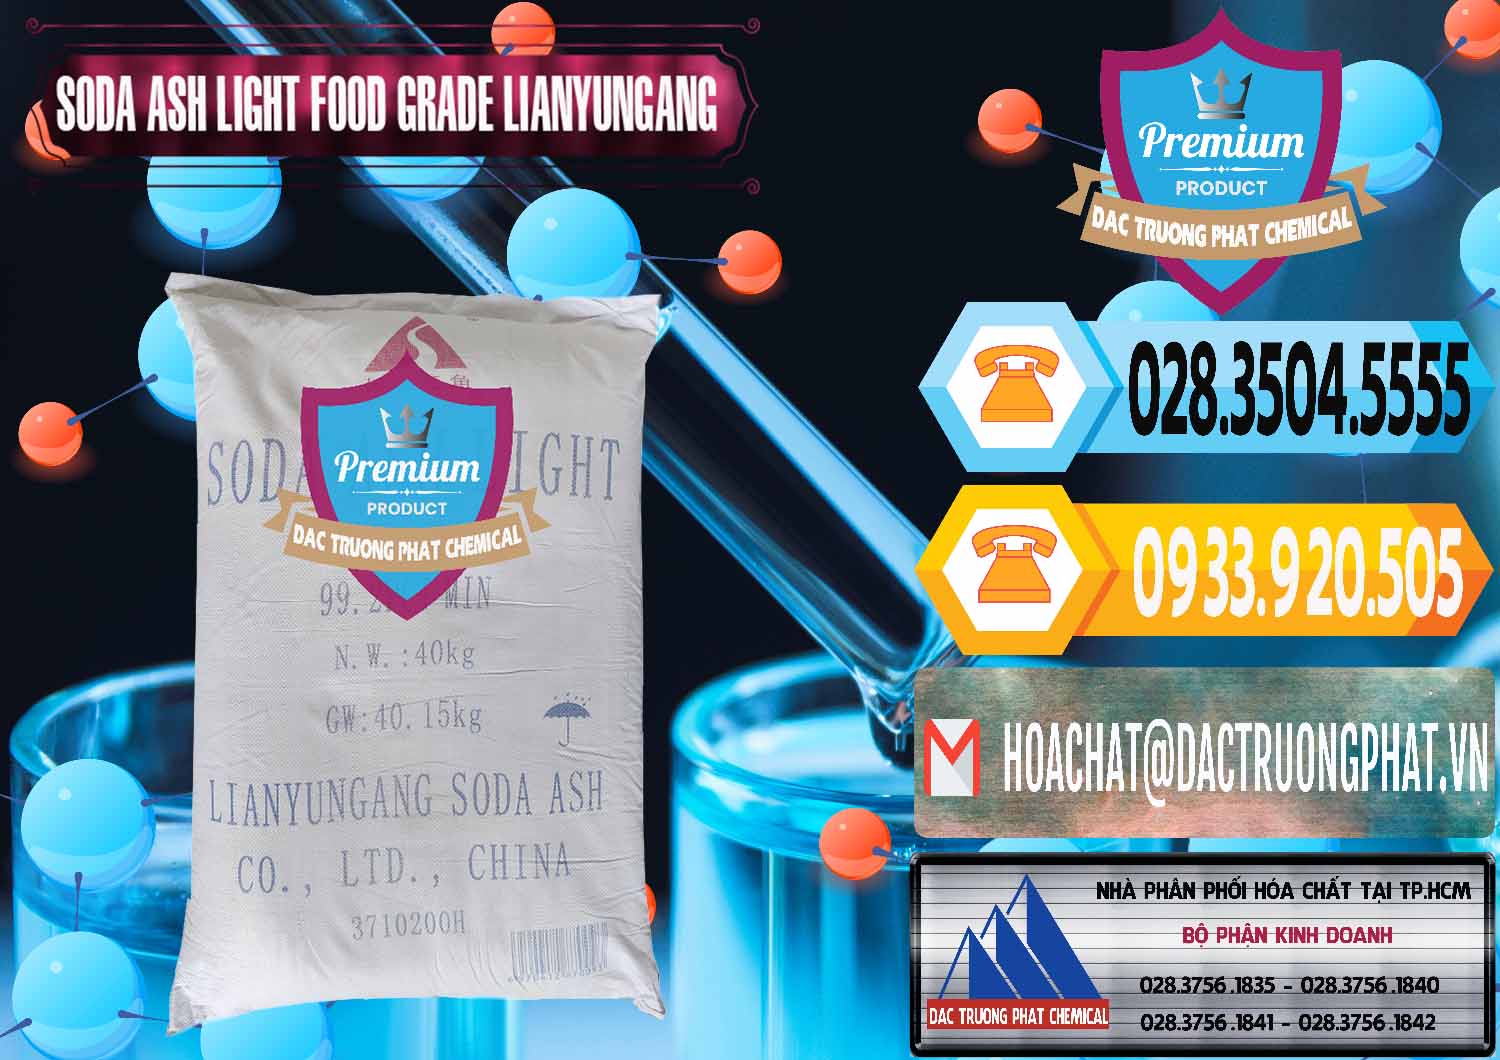 Công ty chuyên bán & phân phối Soda Ash Light - NA2CO3 Food Grade Lianyungang Trung Quốc - 0222 - Nhà cung cấp _ phân phối hóa chất tại TP.HCM - hoachattayrua.net